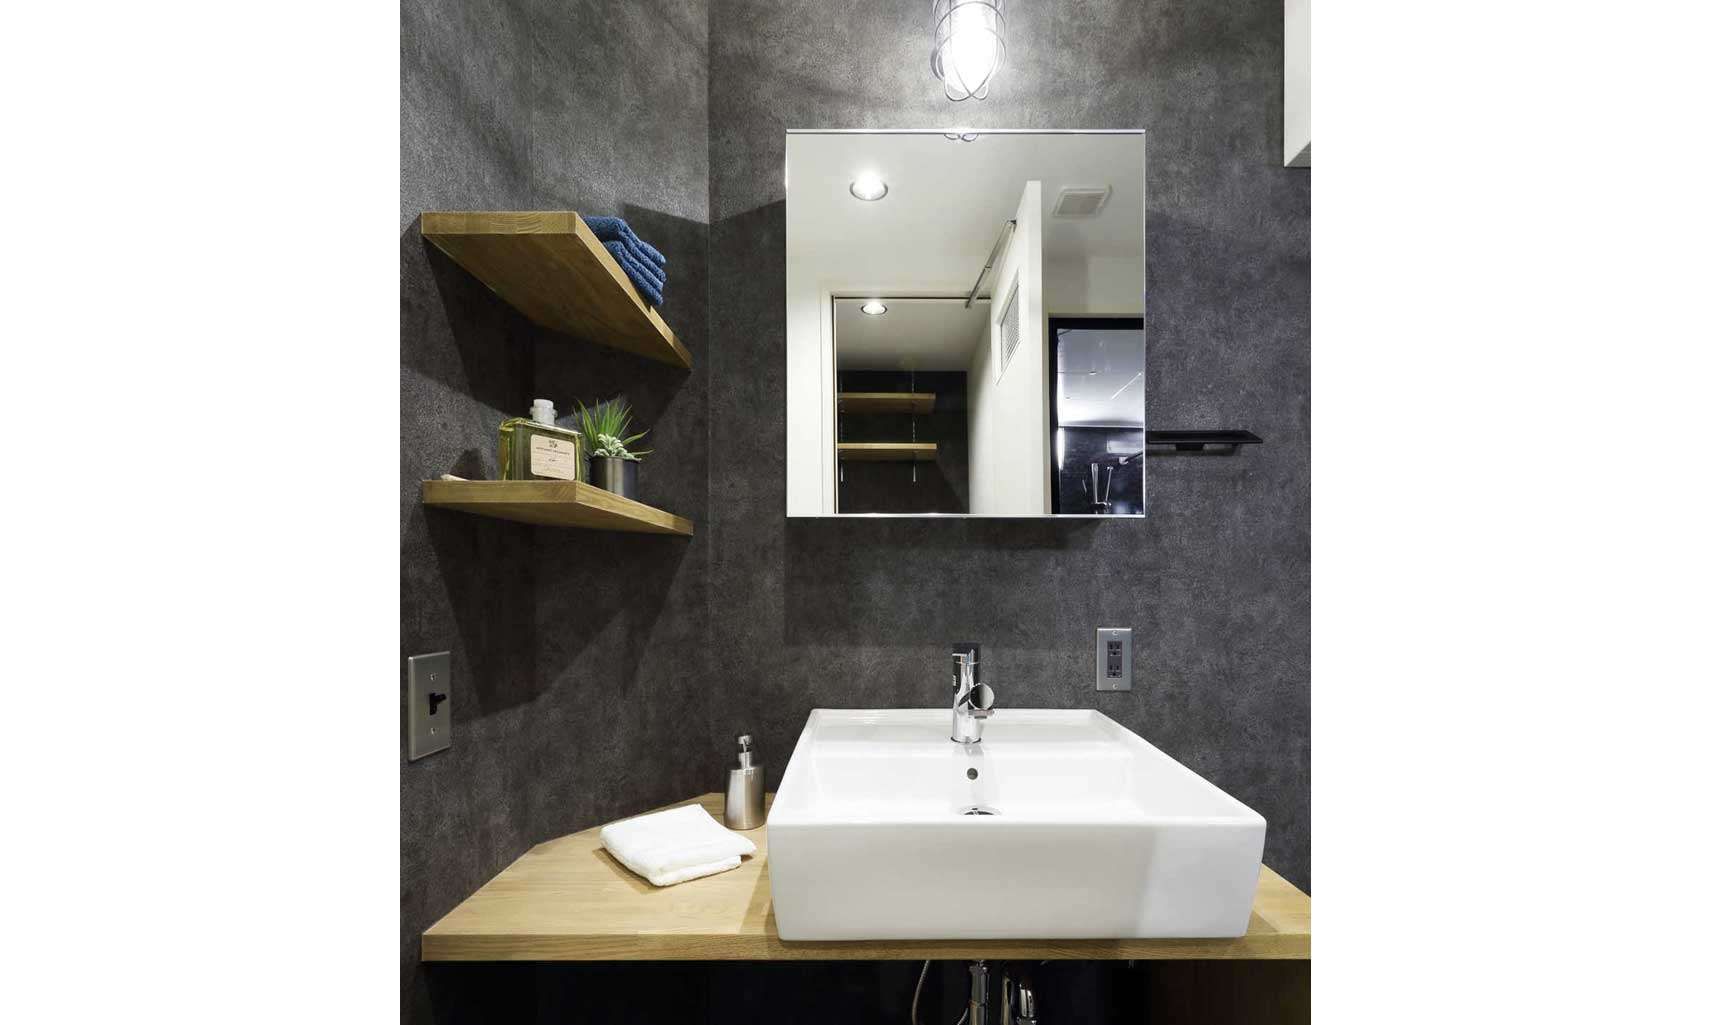 三面鏡じゃない洗面所がリノベーションっぽい おしゃれな洗面所特集 名古屋で中古マンションのリノベーションなら リノベアlabo リノベアlabo